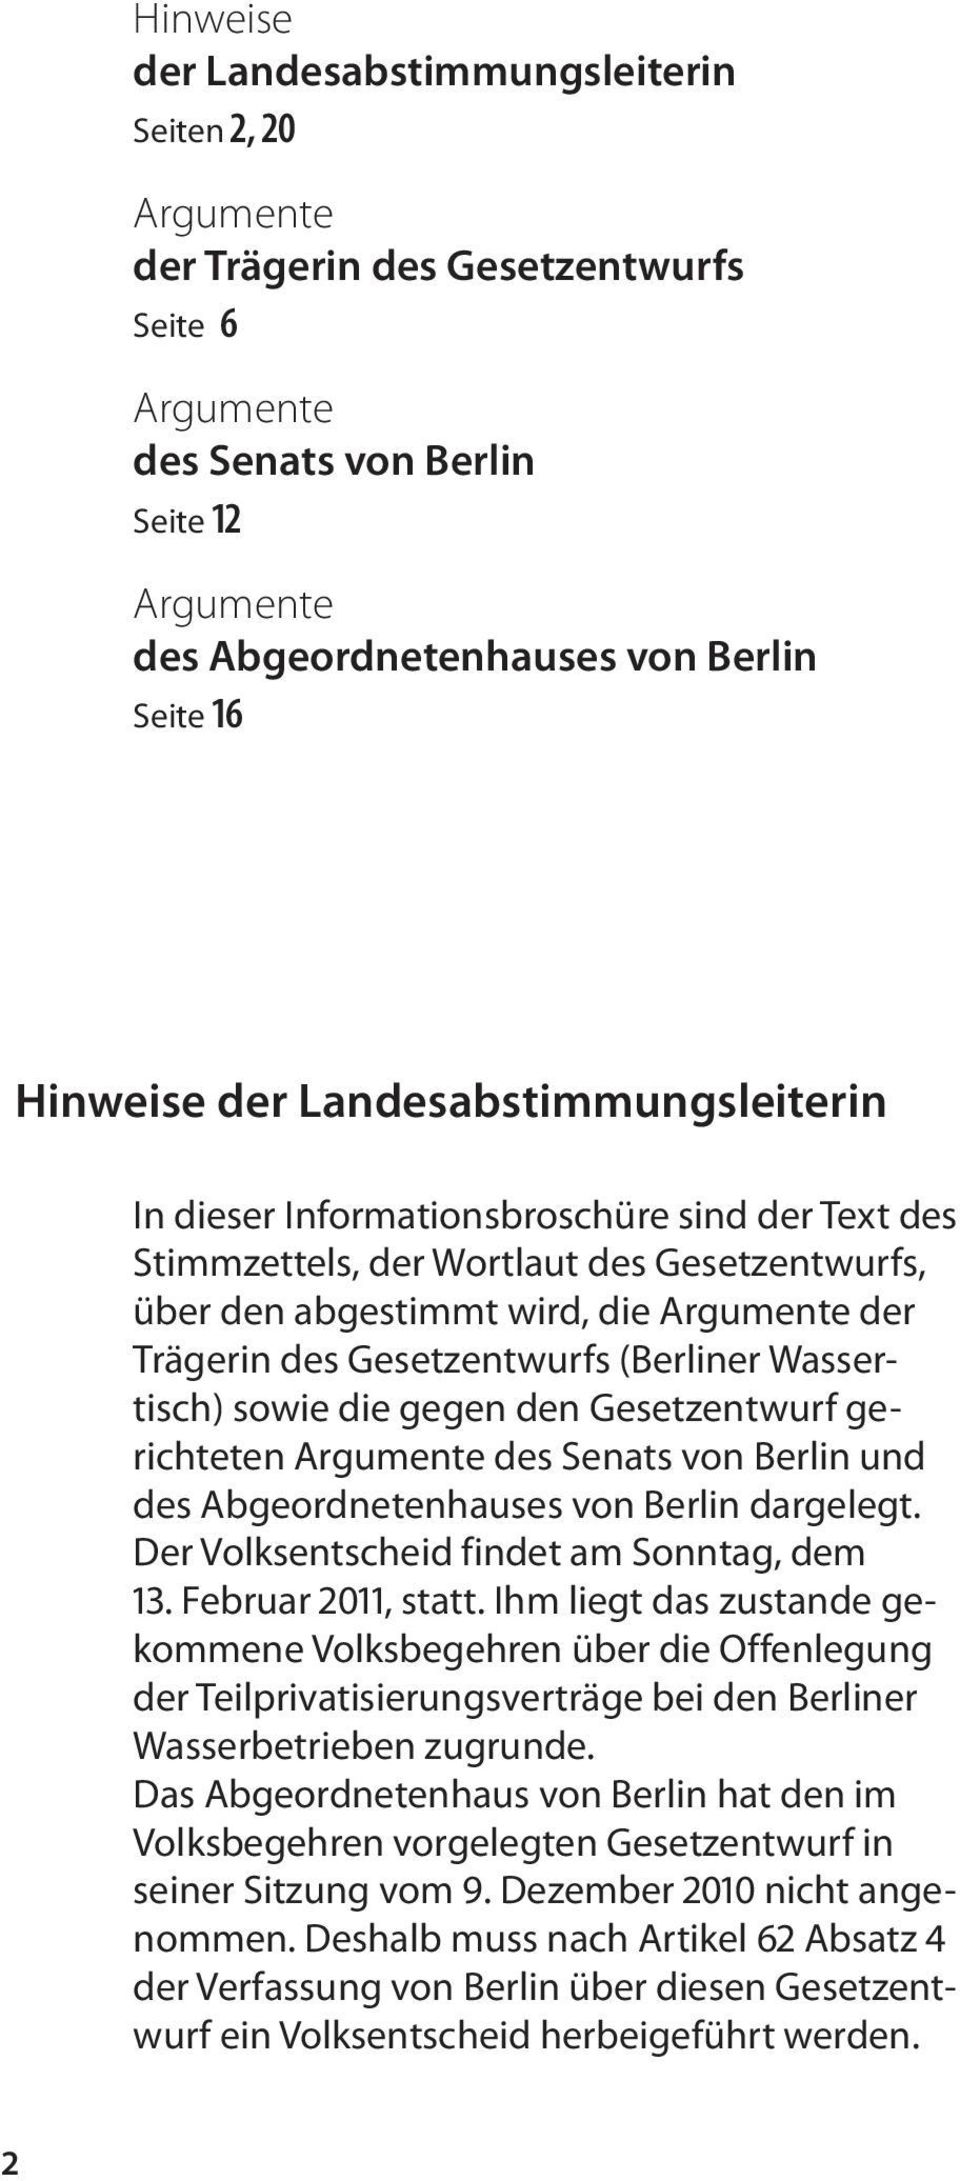 Gesetzentwurfs (Berliner Wassertisch) sowie die gegen den Gesetzentwurf gerichteten Argumente des Senats von Berlin und des Abgeordnetenhauses von Berlin dargelegt.